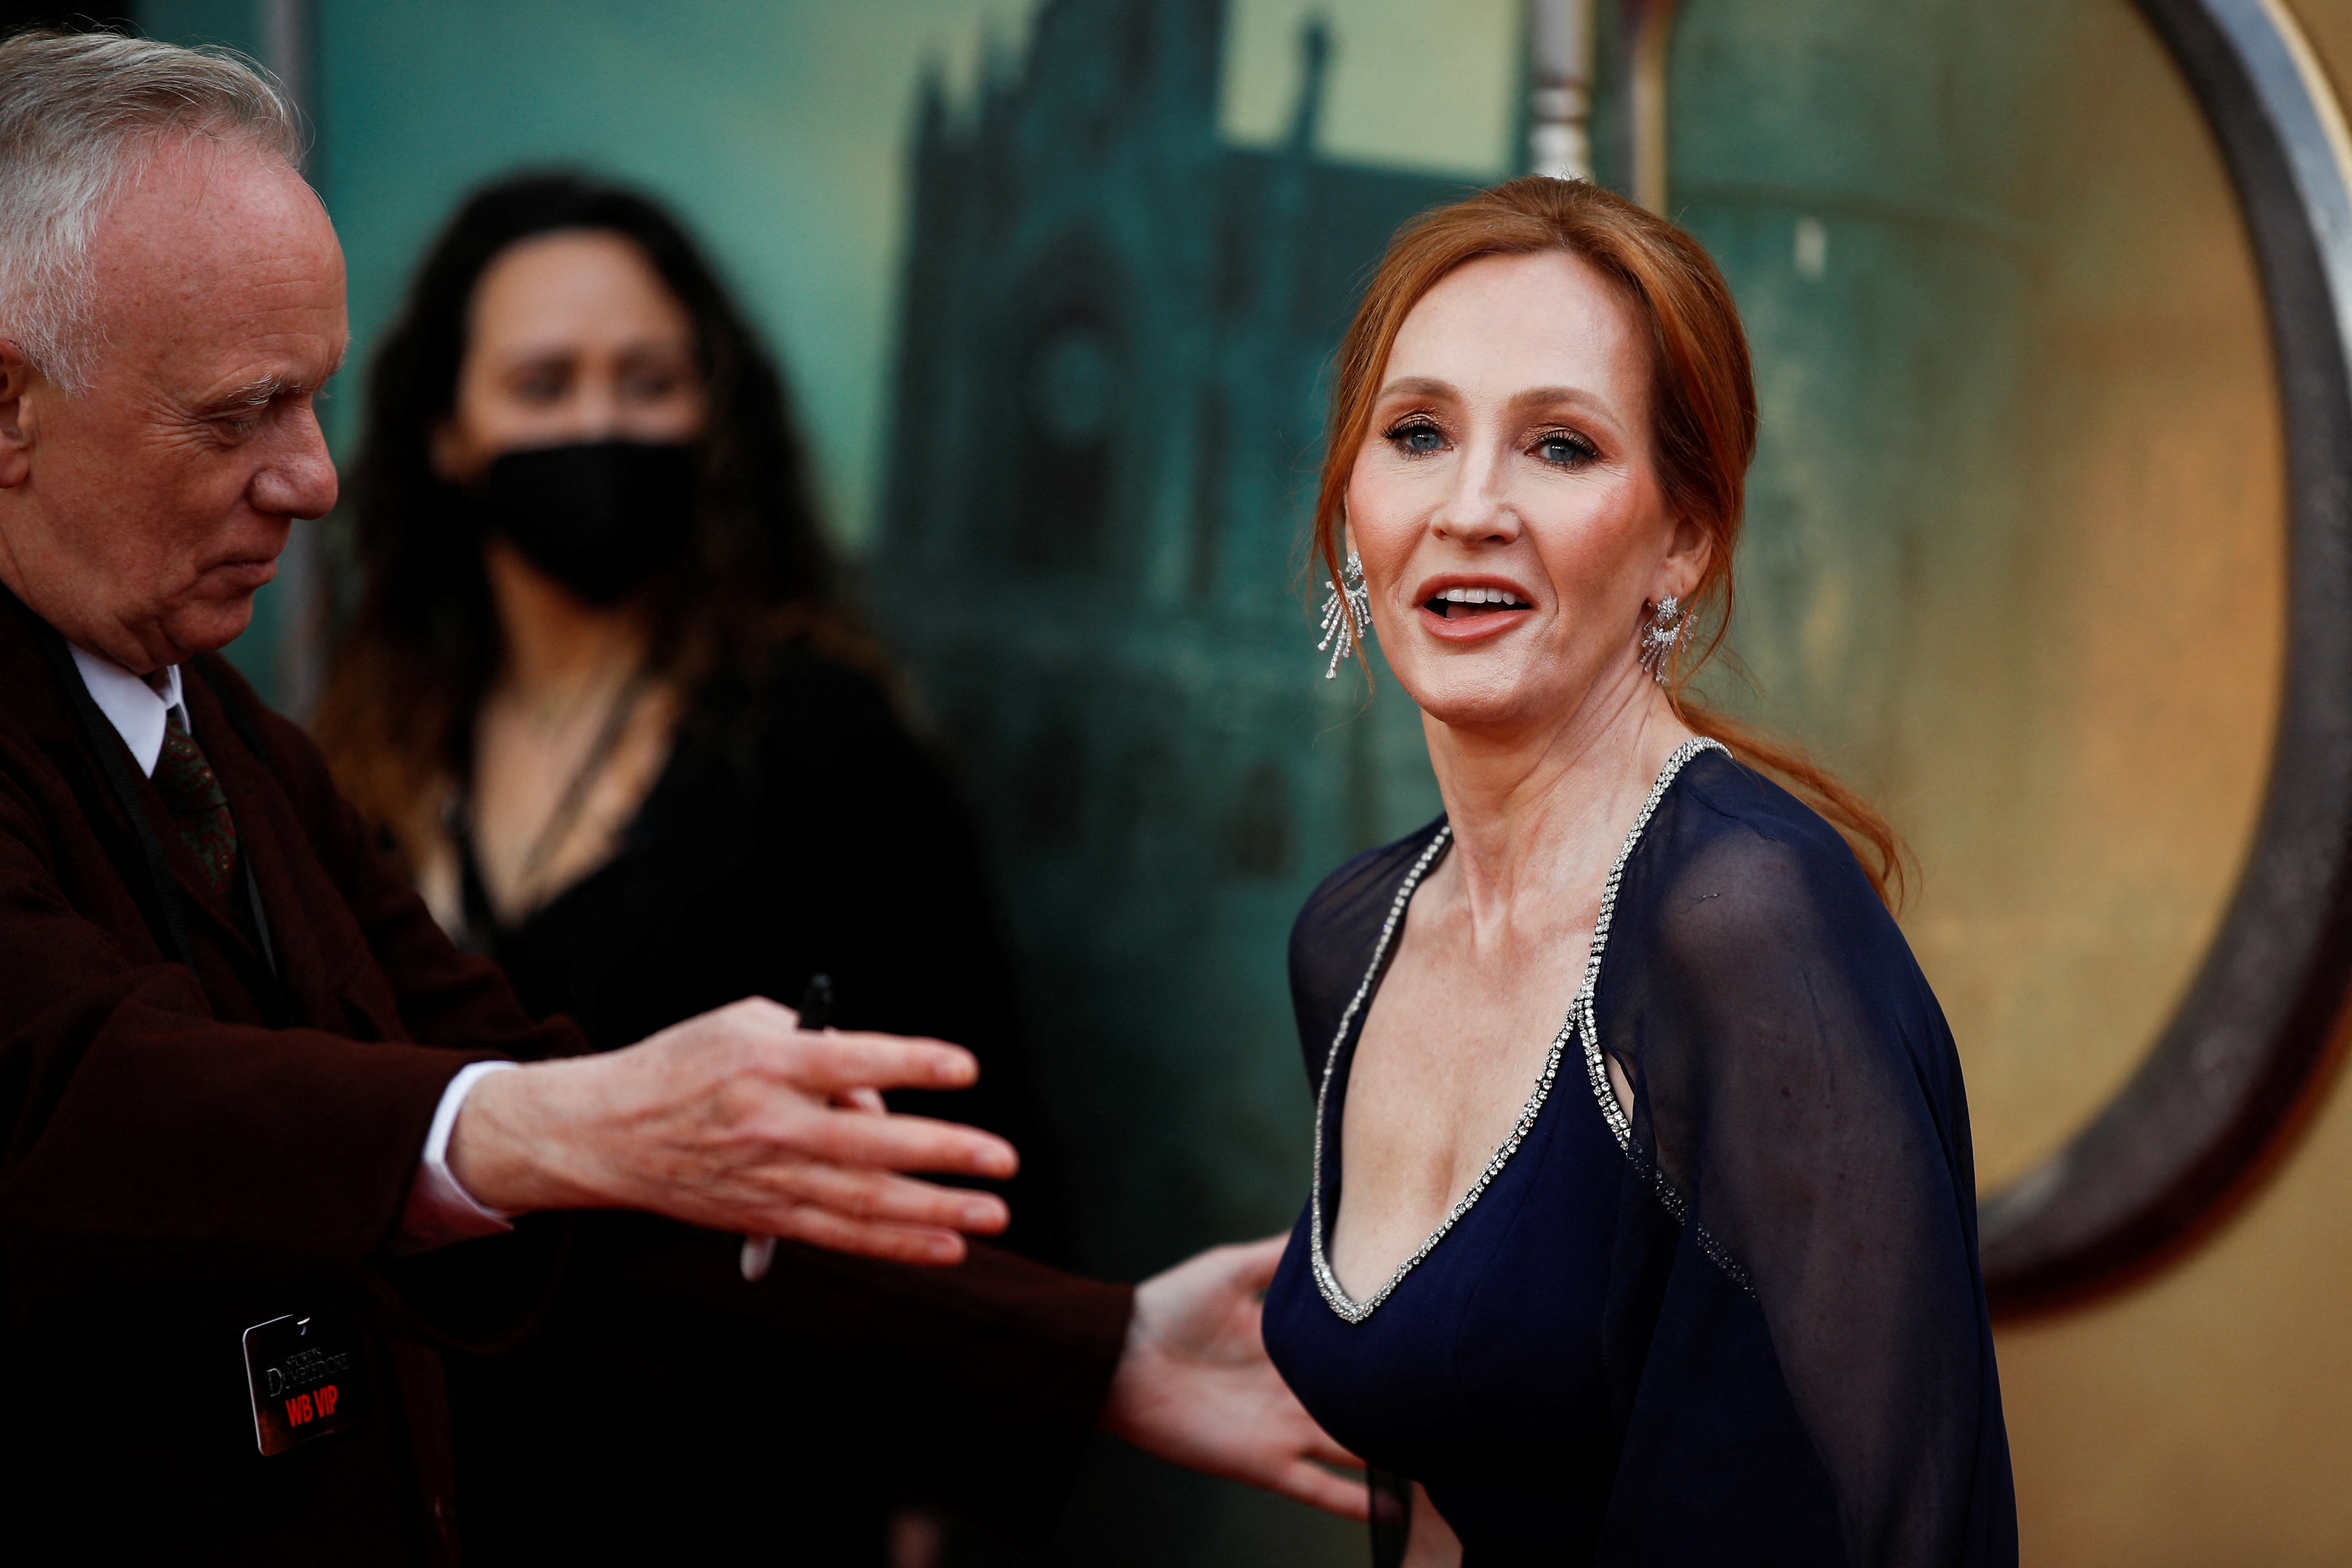 J.K. Rowling llega al estreno mundial de la película "Fantastic Beasts: Los secretos de Dumbledore" en Londres, Gran Bretaña, el 29 de marzo de 2022. REUTERS/Peter Nicholls